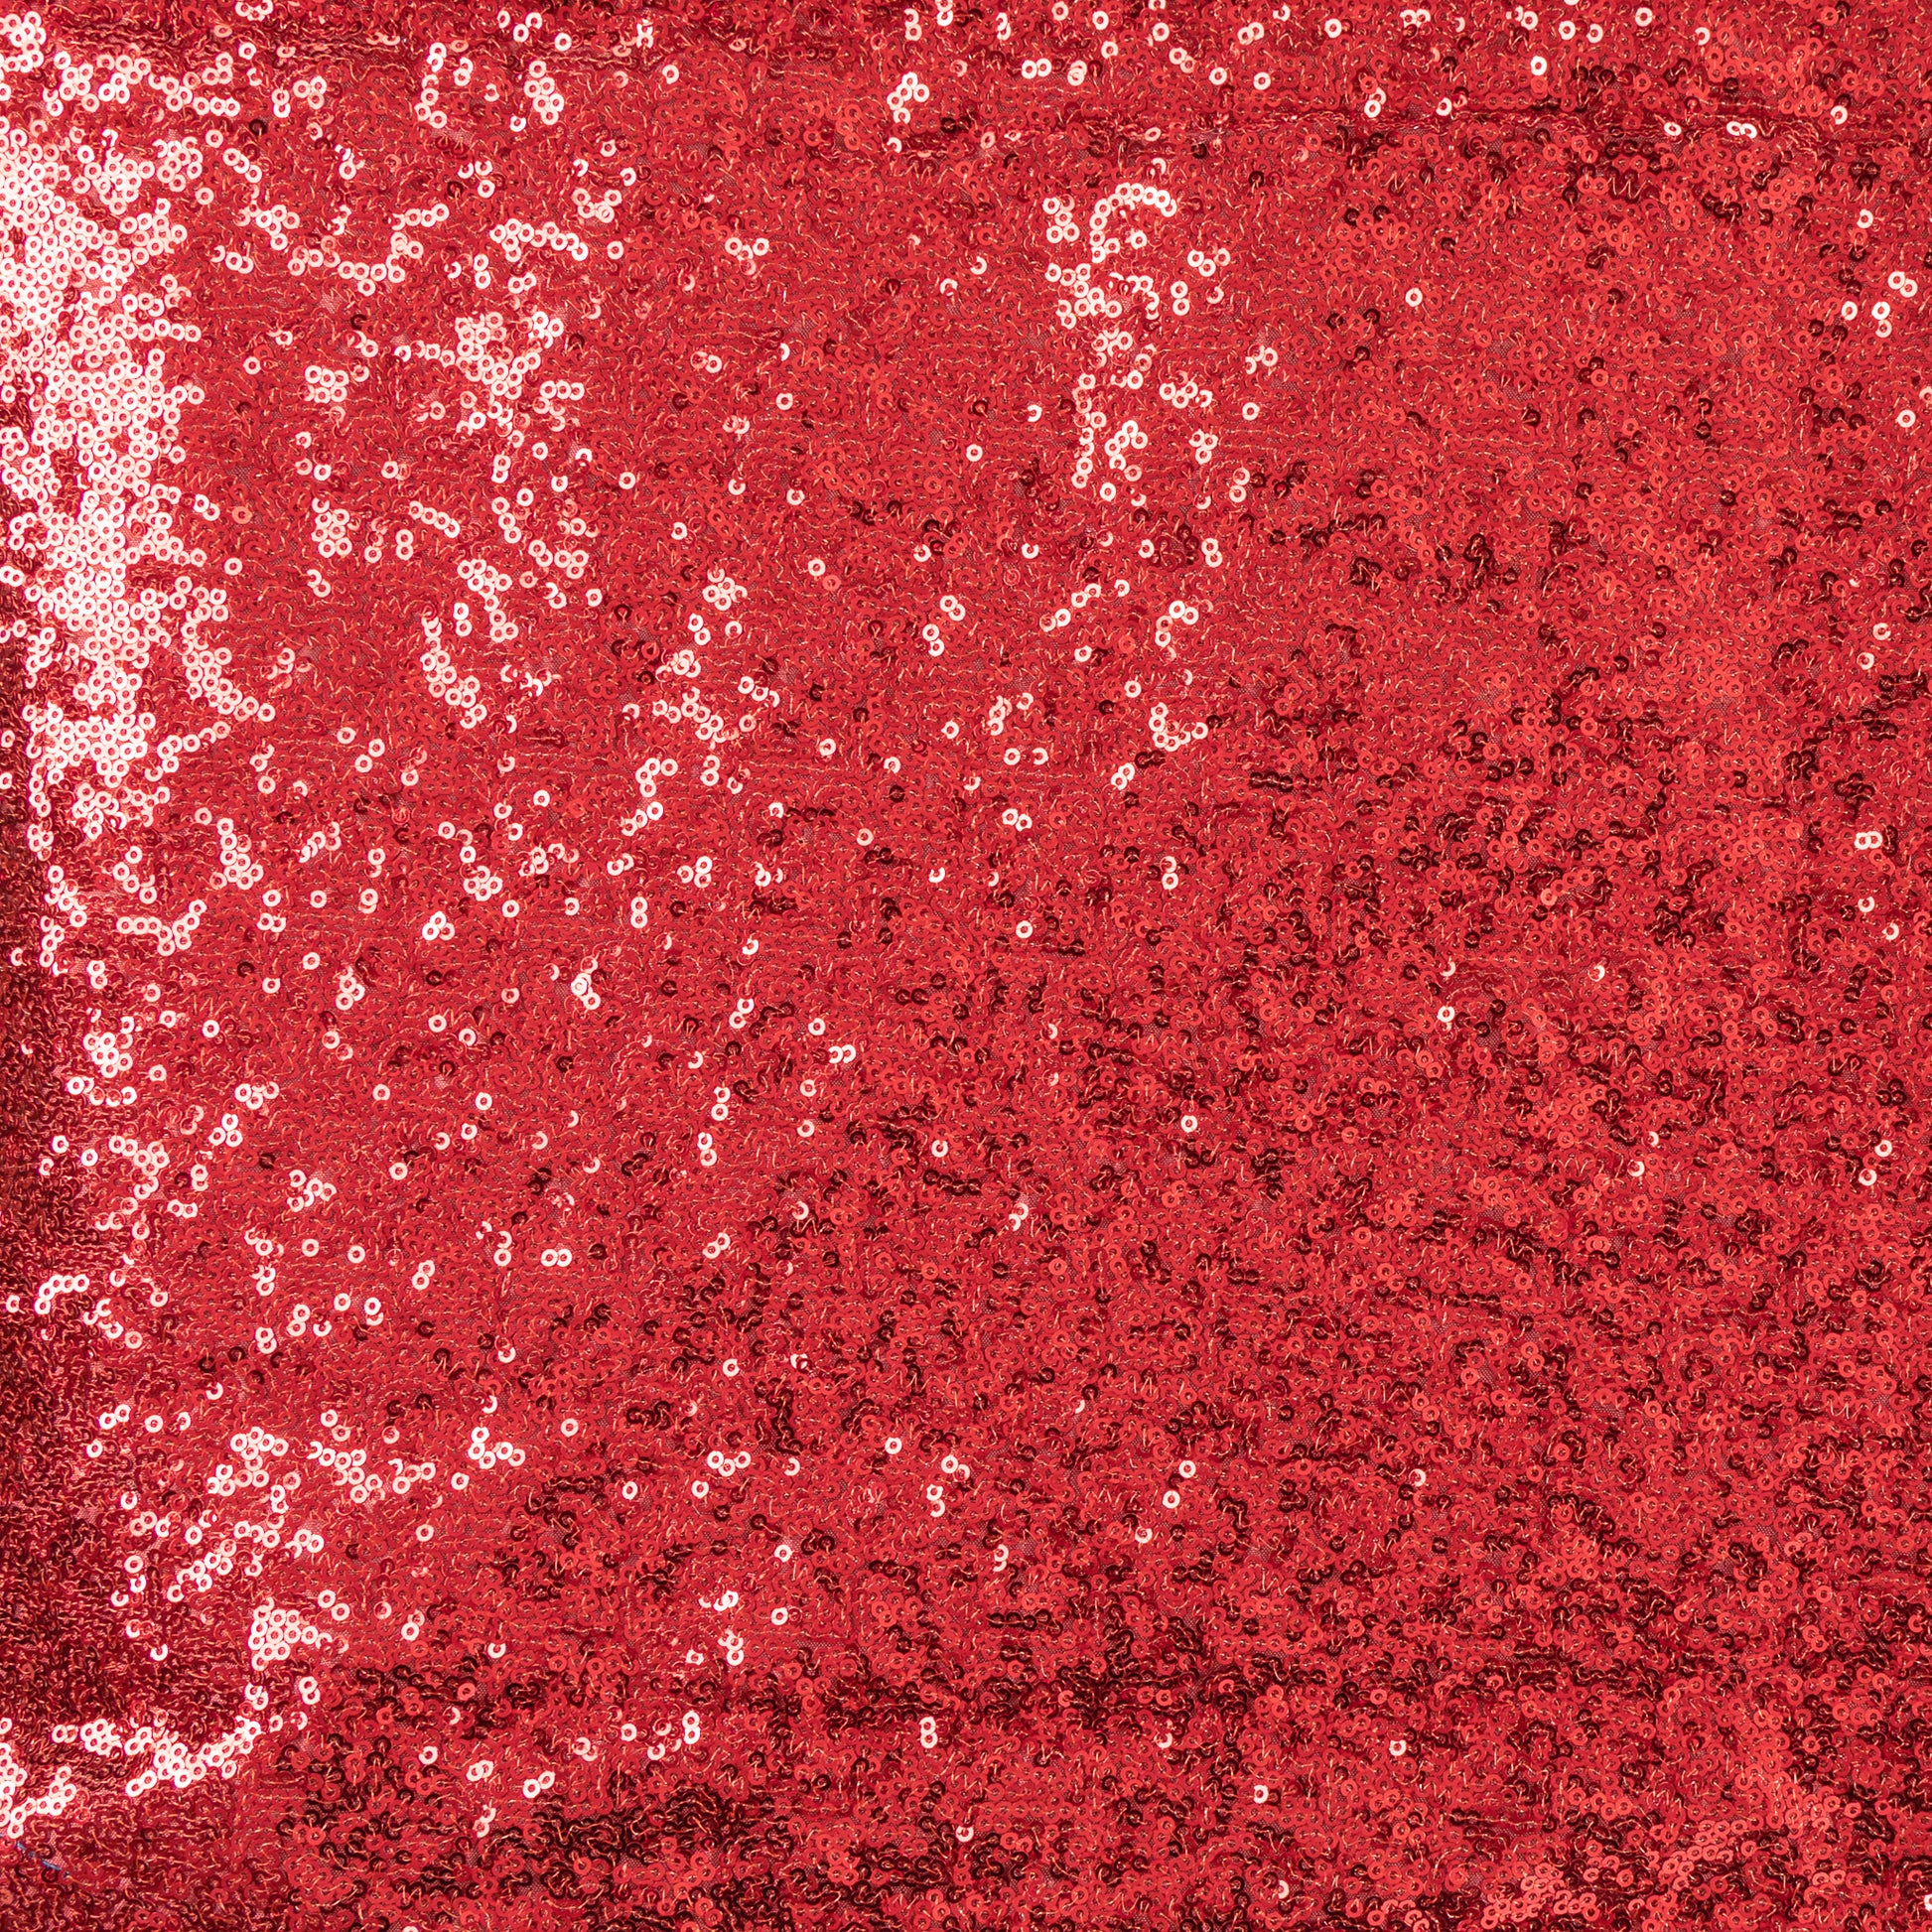  GLITZ Sequins Fabric Bolt - Red